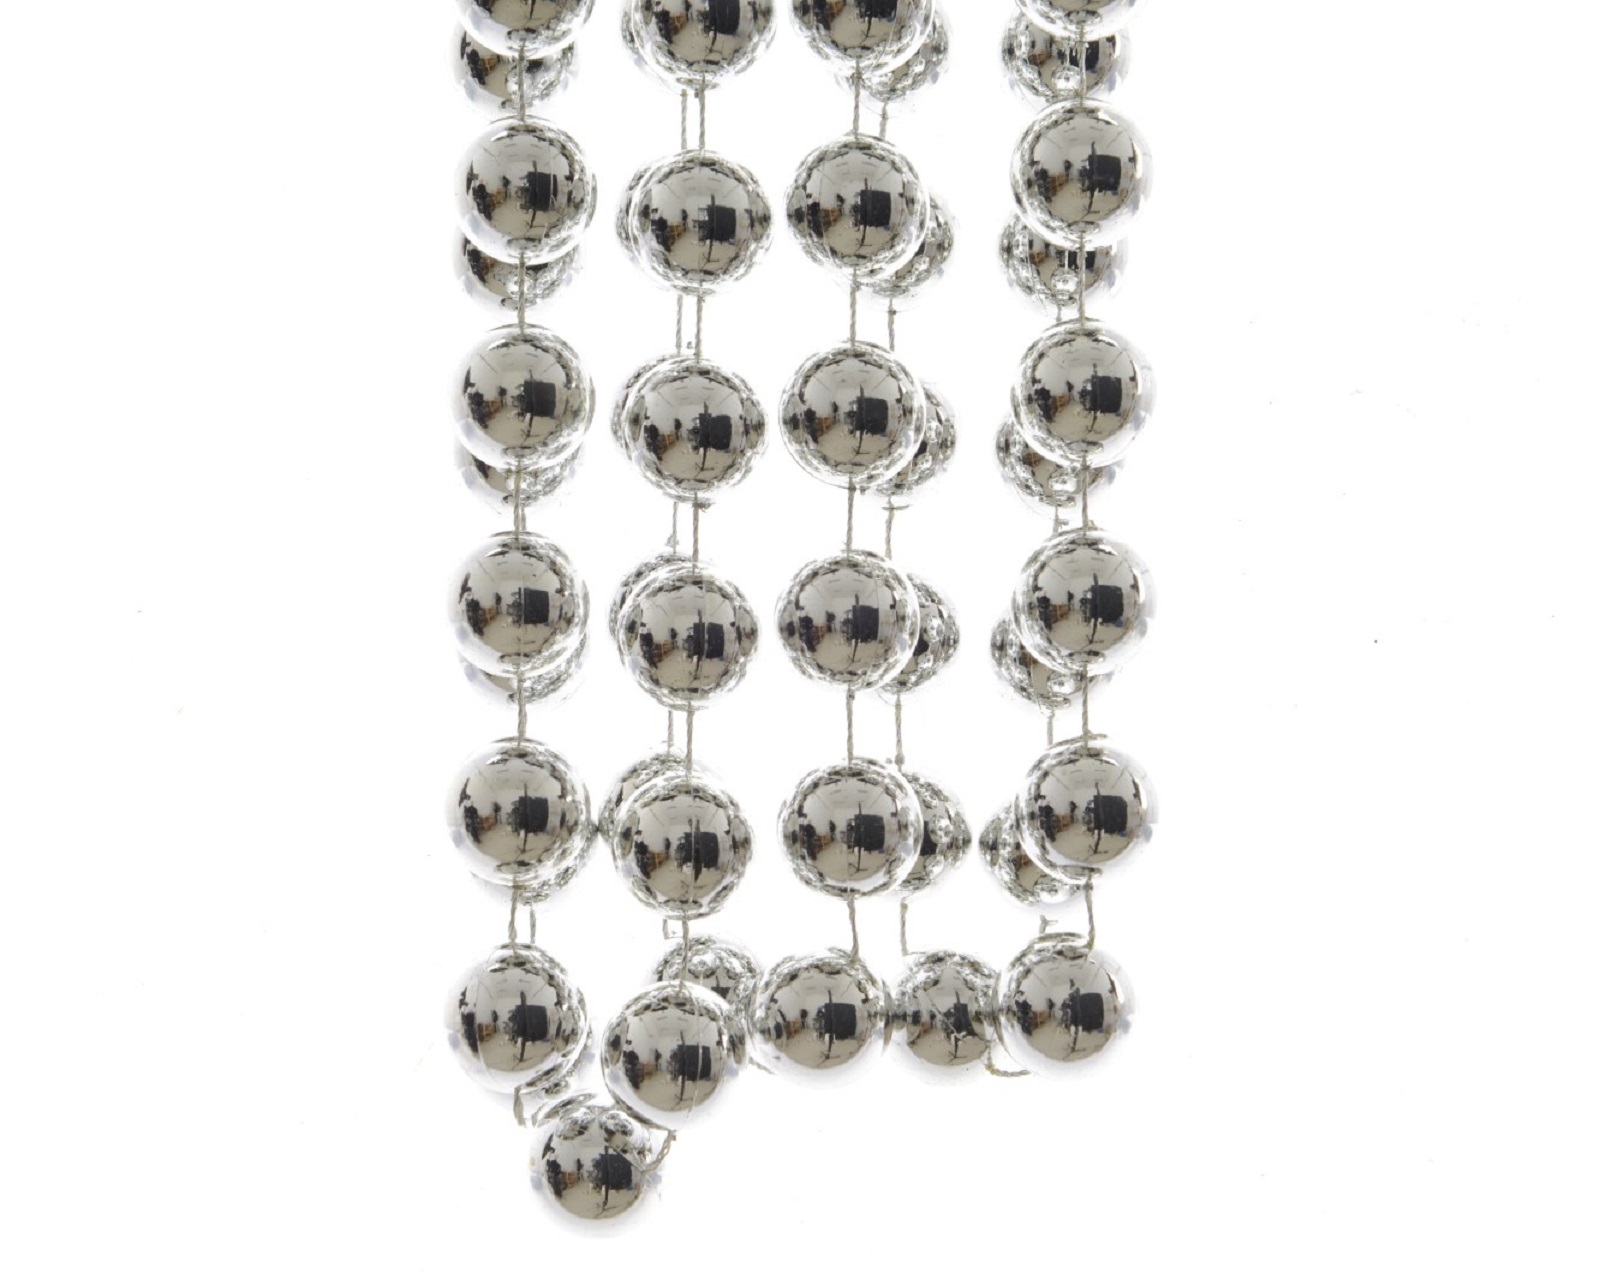 Perlenkette Kette Baumschmuck Perlengirlande Weihnachtsdeko Deko silber 2,70m